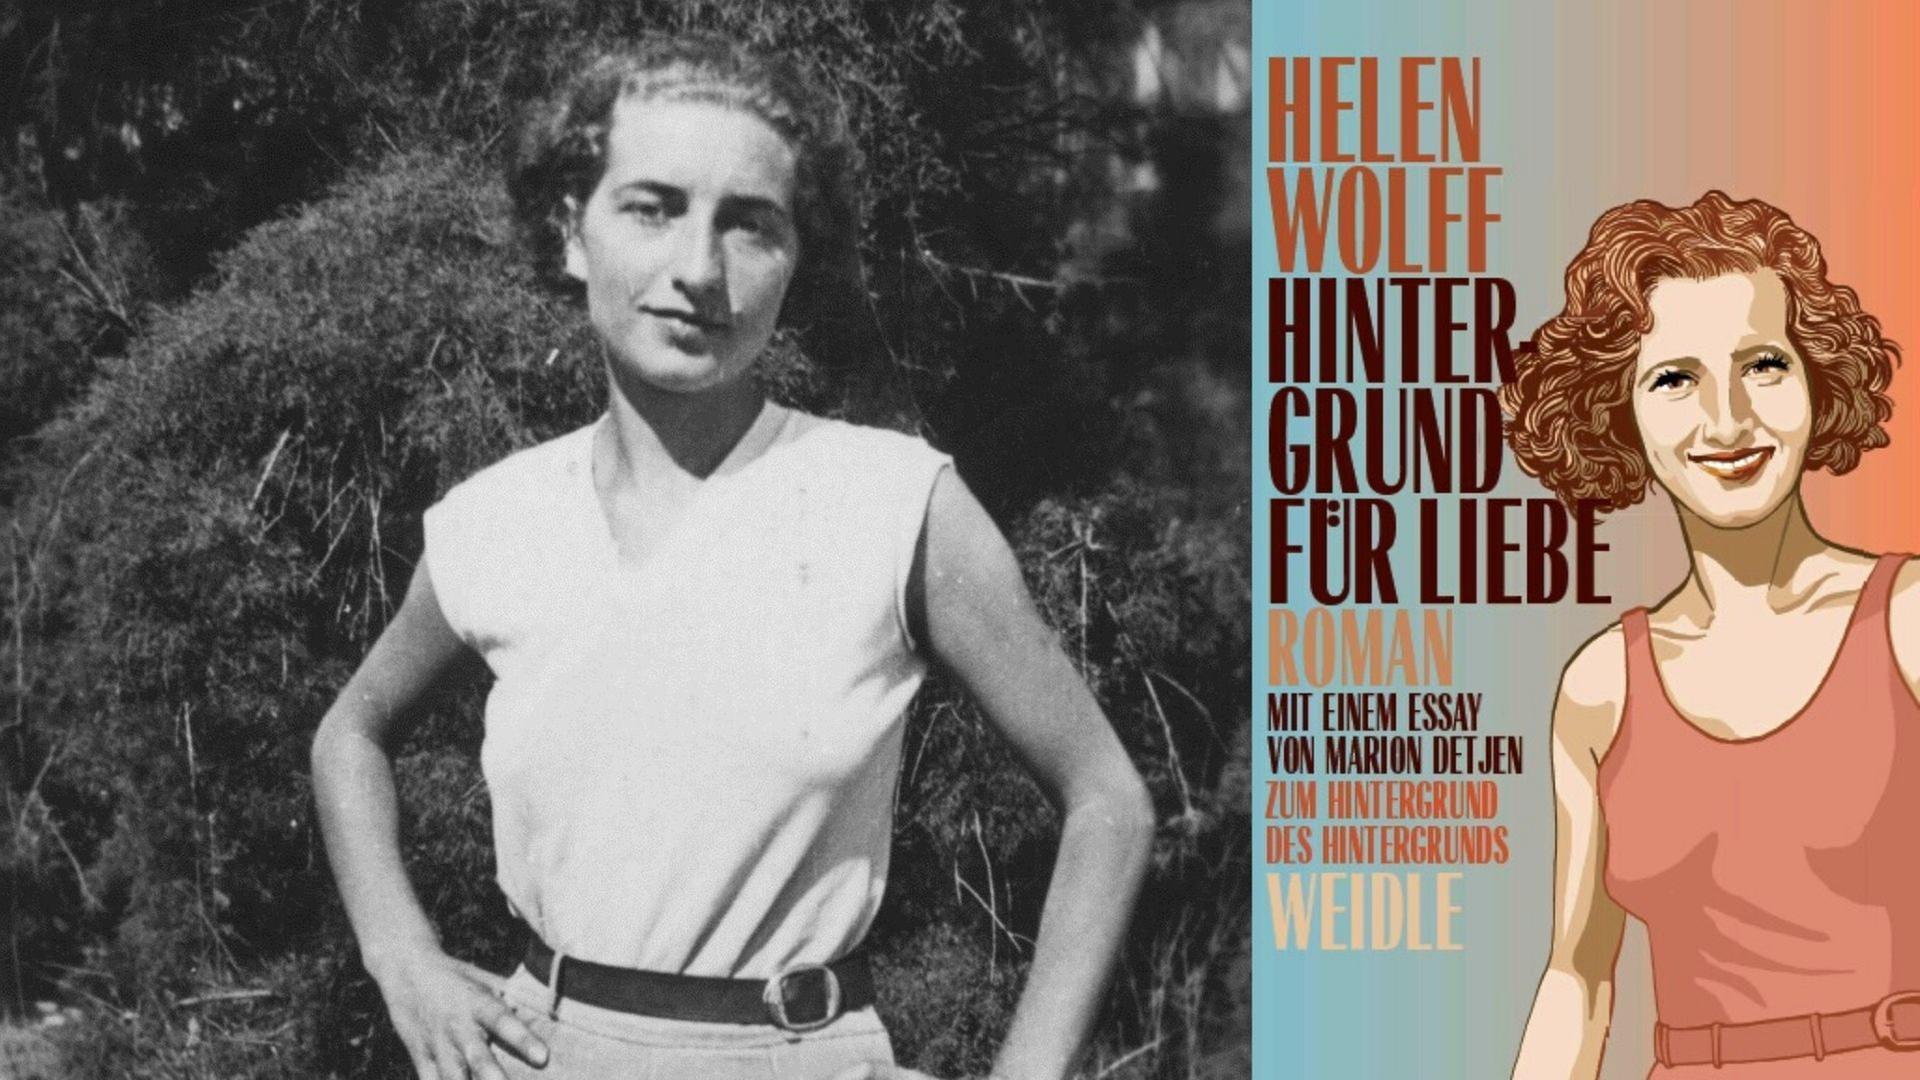 Helen Wolff 1931 und ihr Buch „Hintergrund für Liebe“